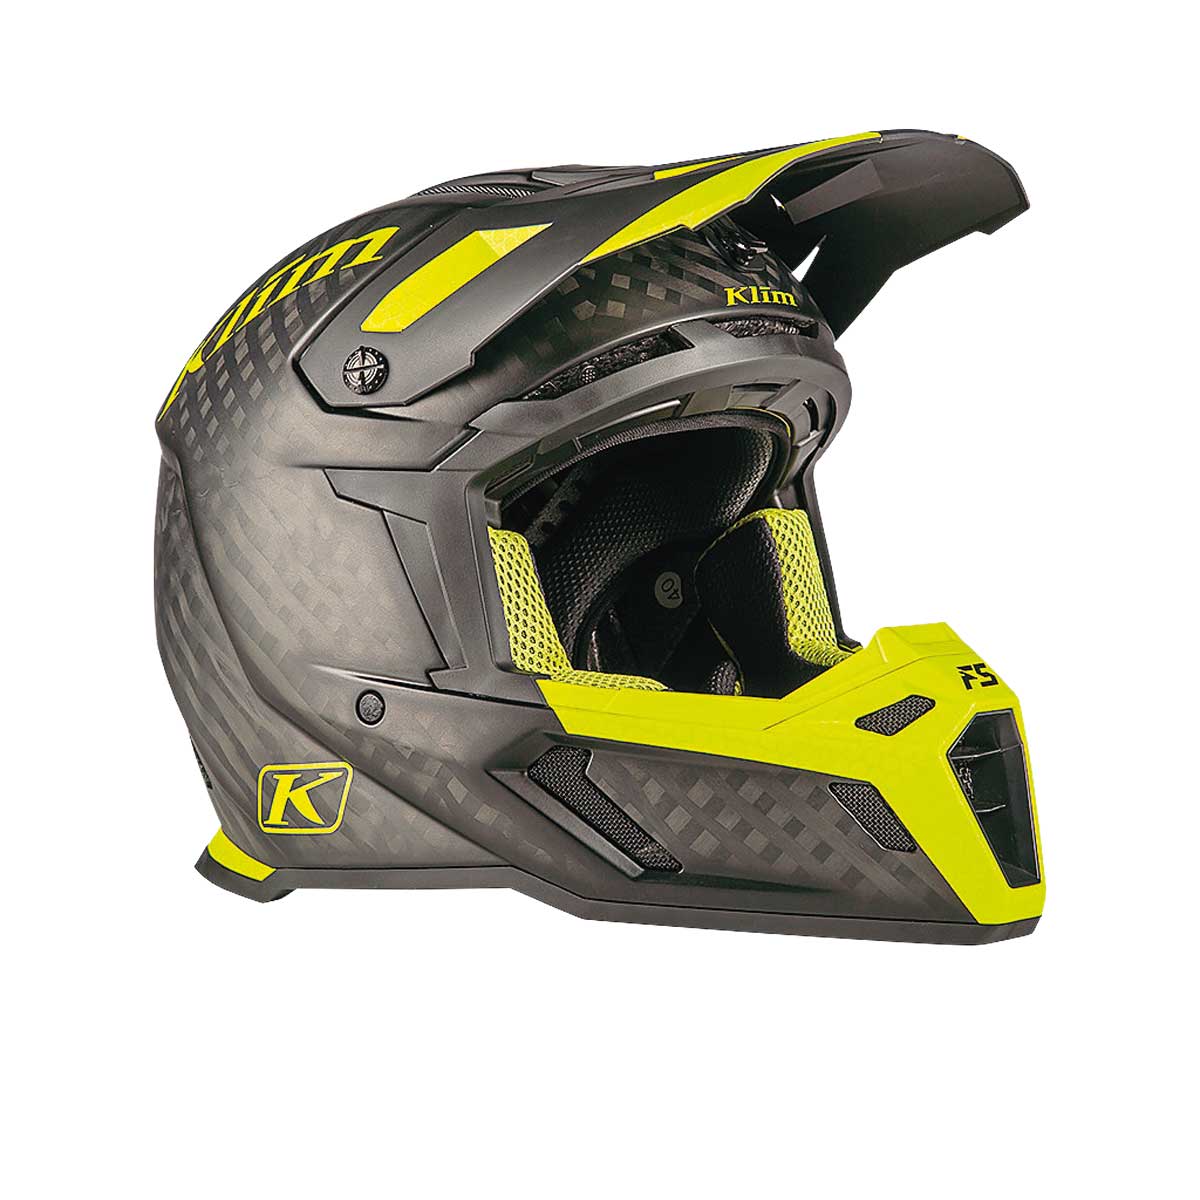 PRODUCT: Klim F5 Koroyd adventure helmet